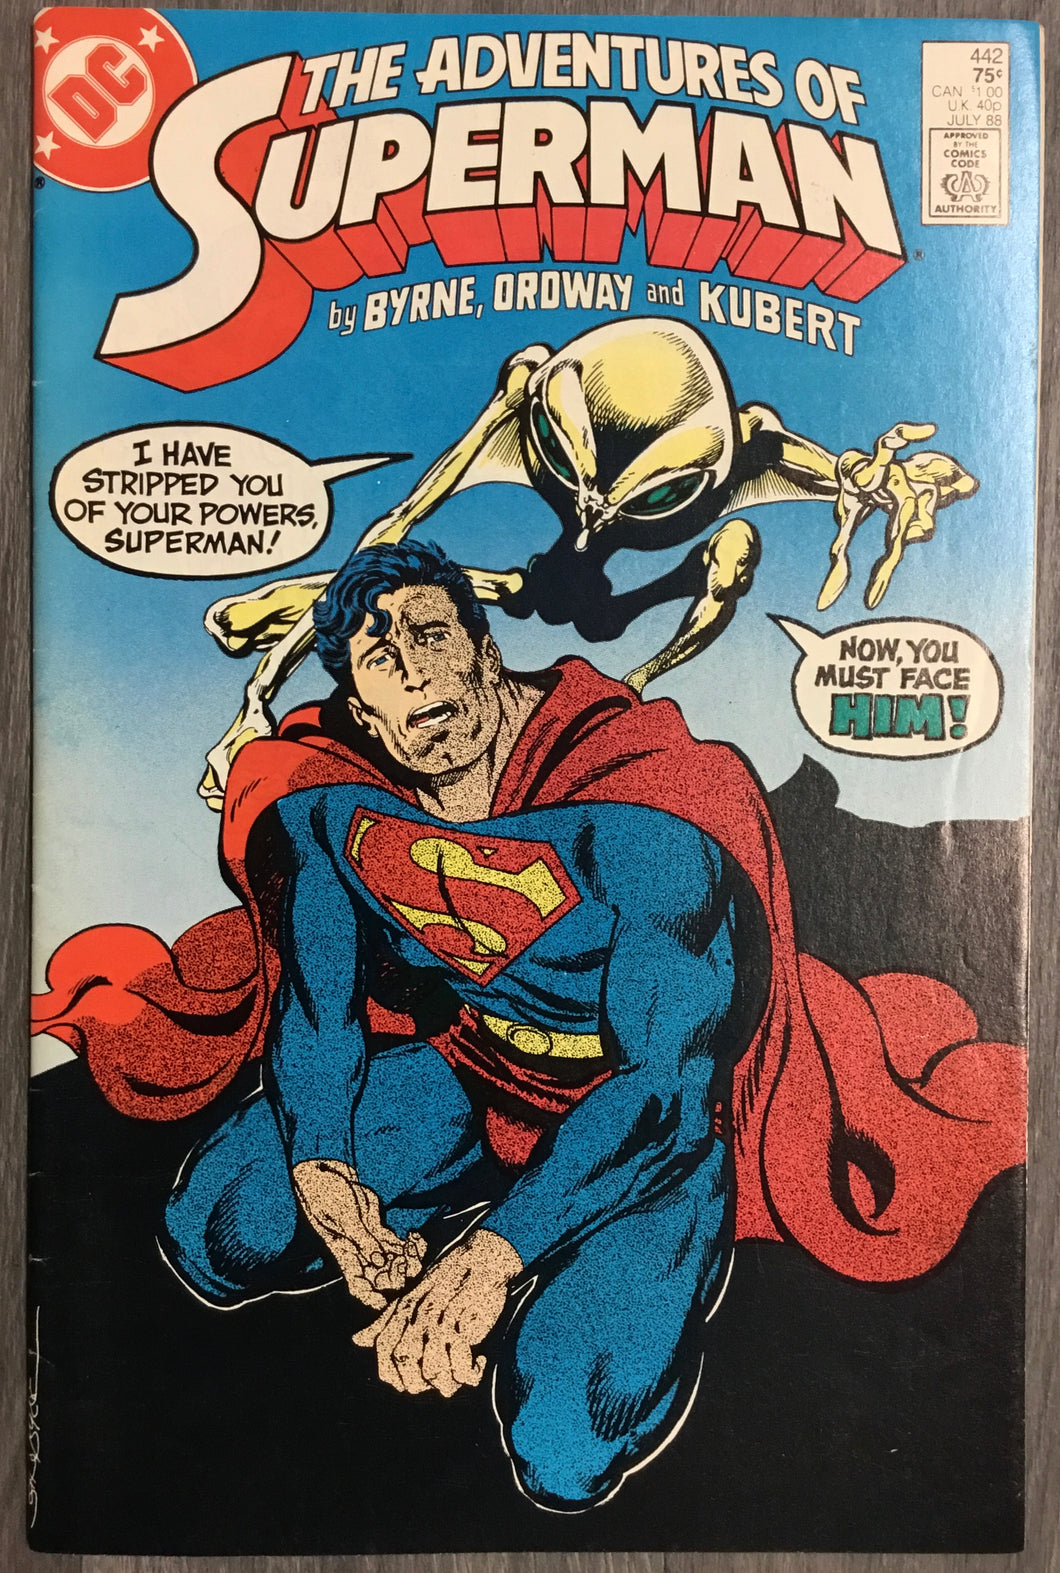 Adventures of Superman No. #442 1988 DC Comics